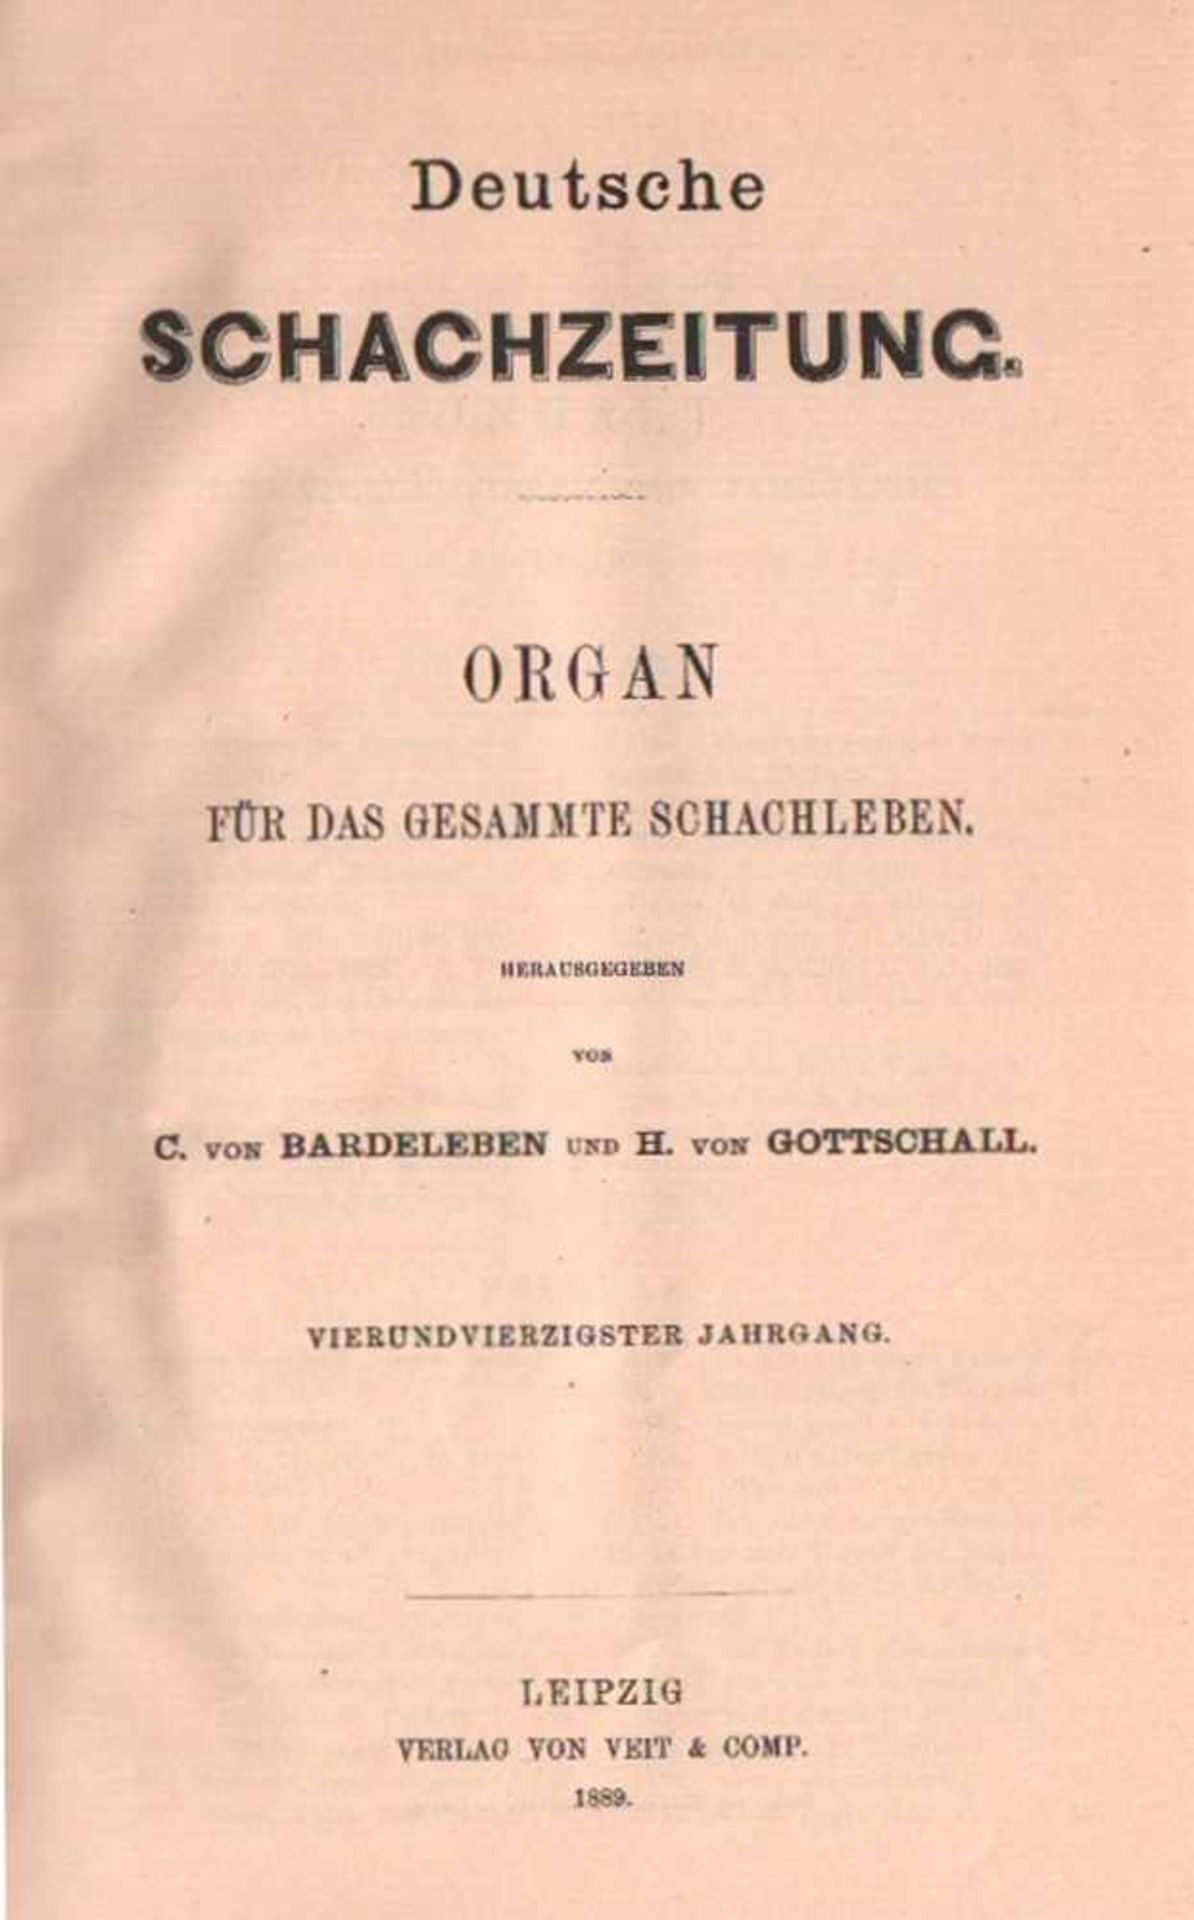 Deutsche Schachzeitung.Organ für das gesammte Schachleben. Hrsg. von C. v. Bardeleben und H. von